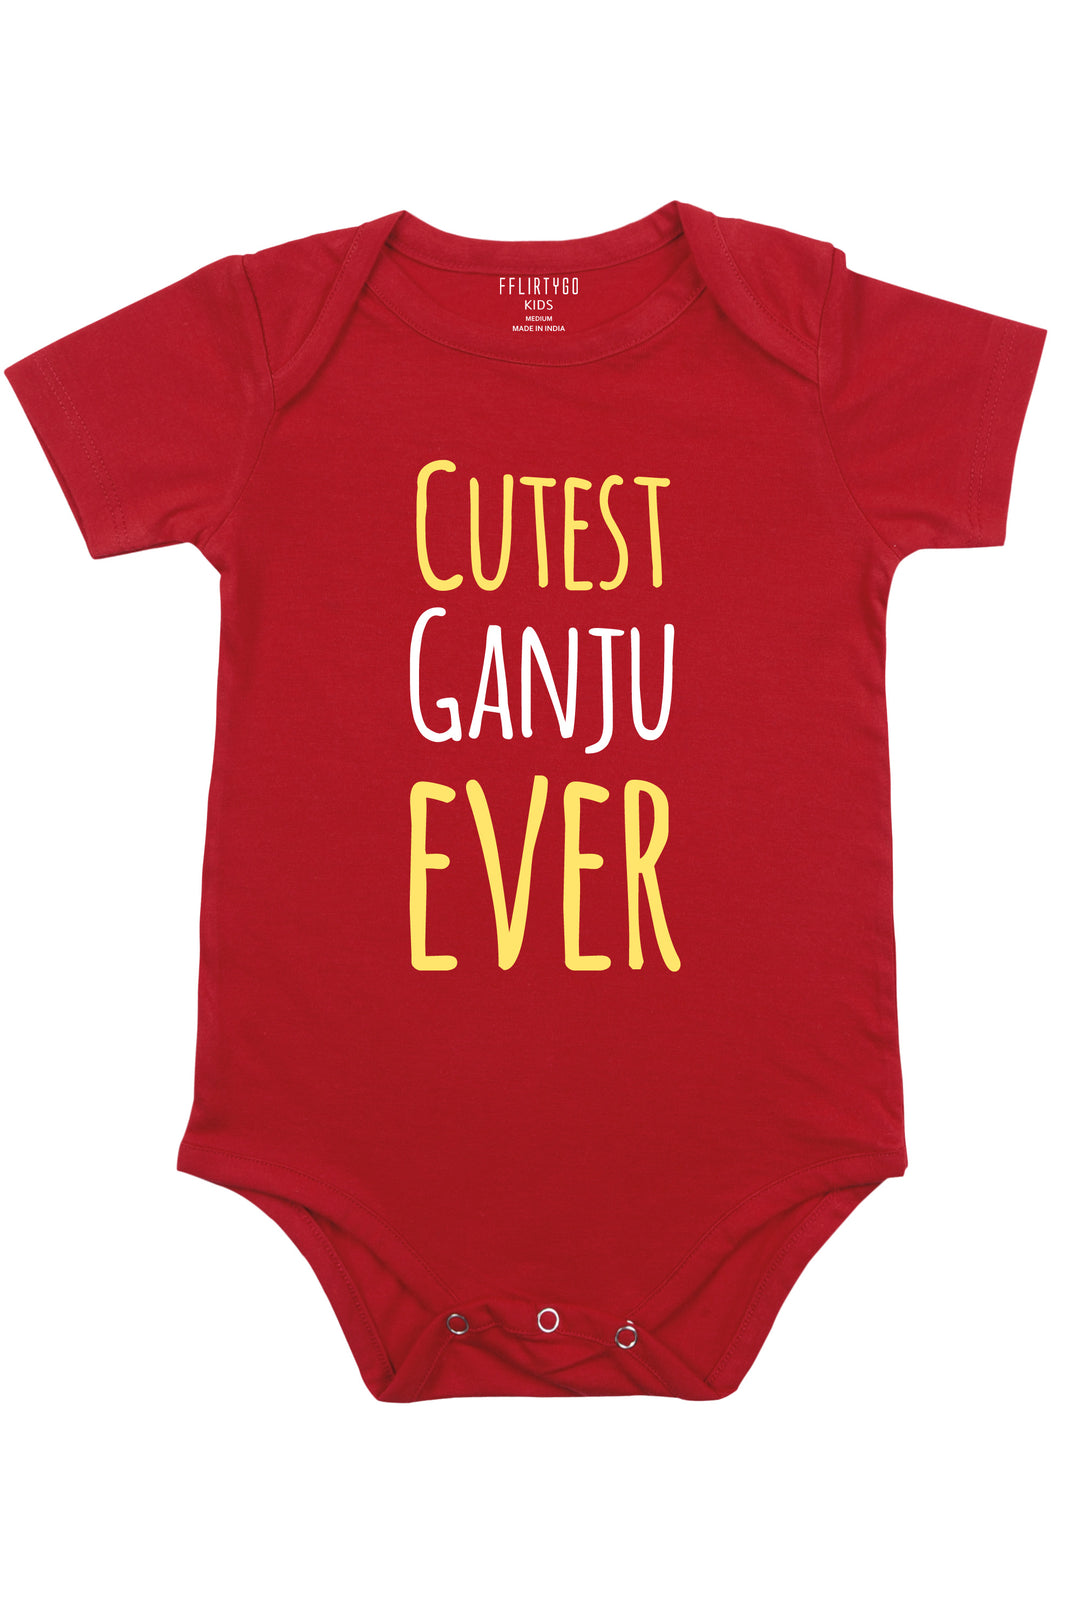 Cutest Ganju Ever Baby Romper | Onesies